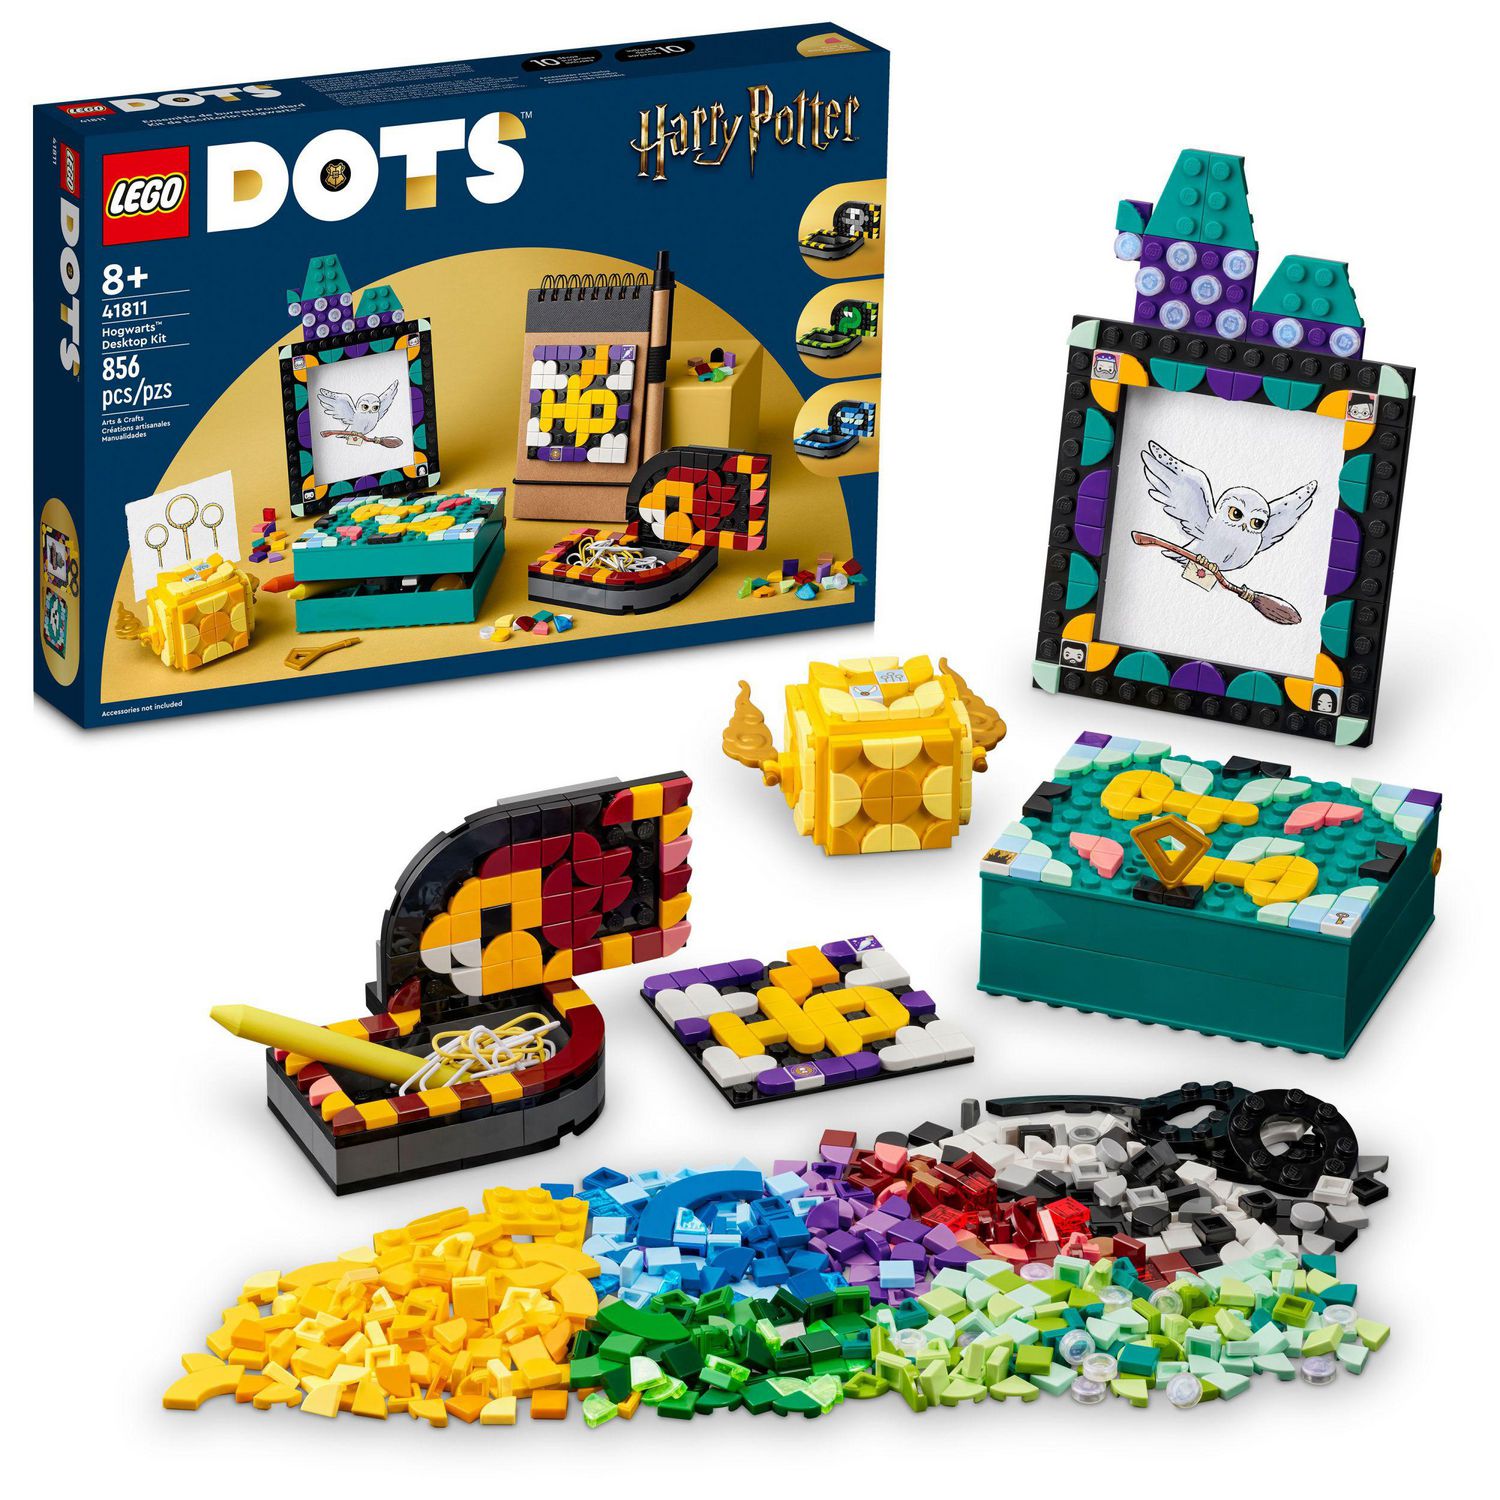 LEGO DOTS Hogwarts Desktop Kit 41811, DIY Harry Potter Back to ...